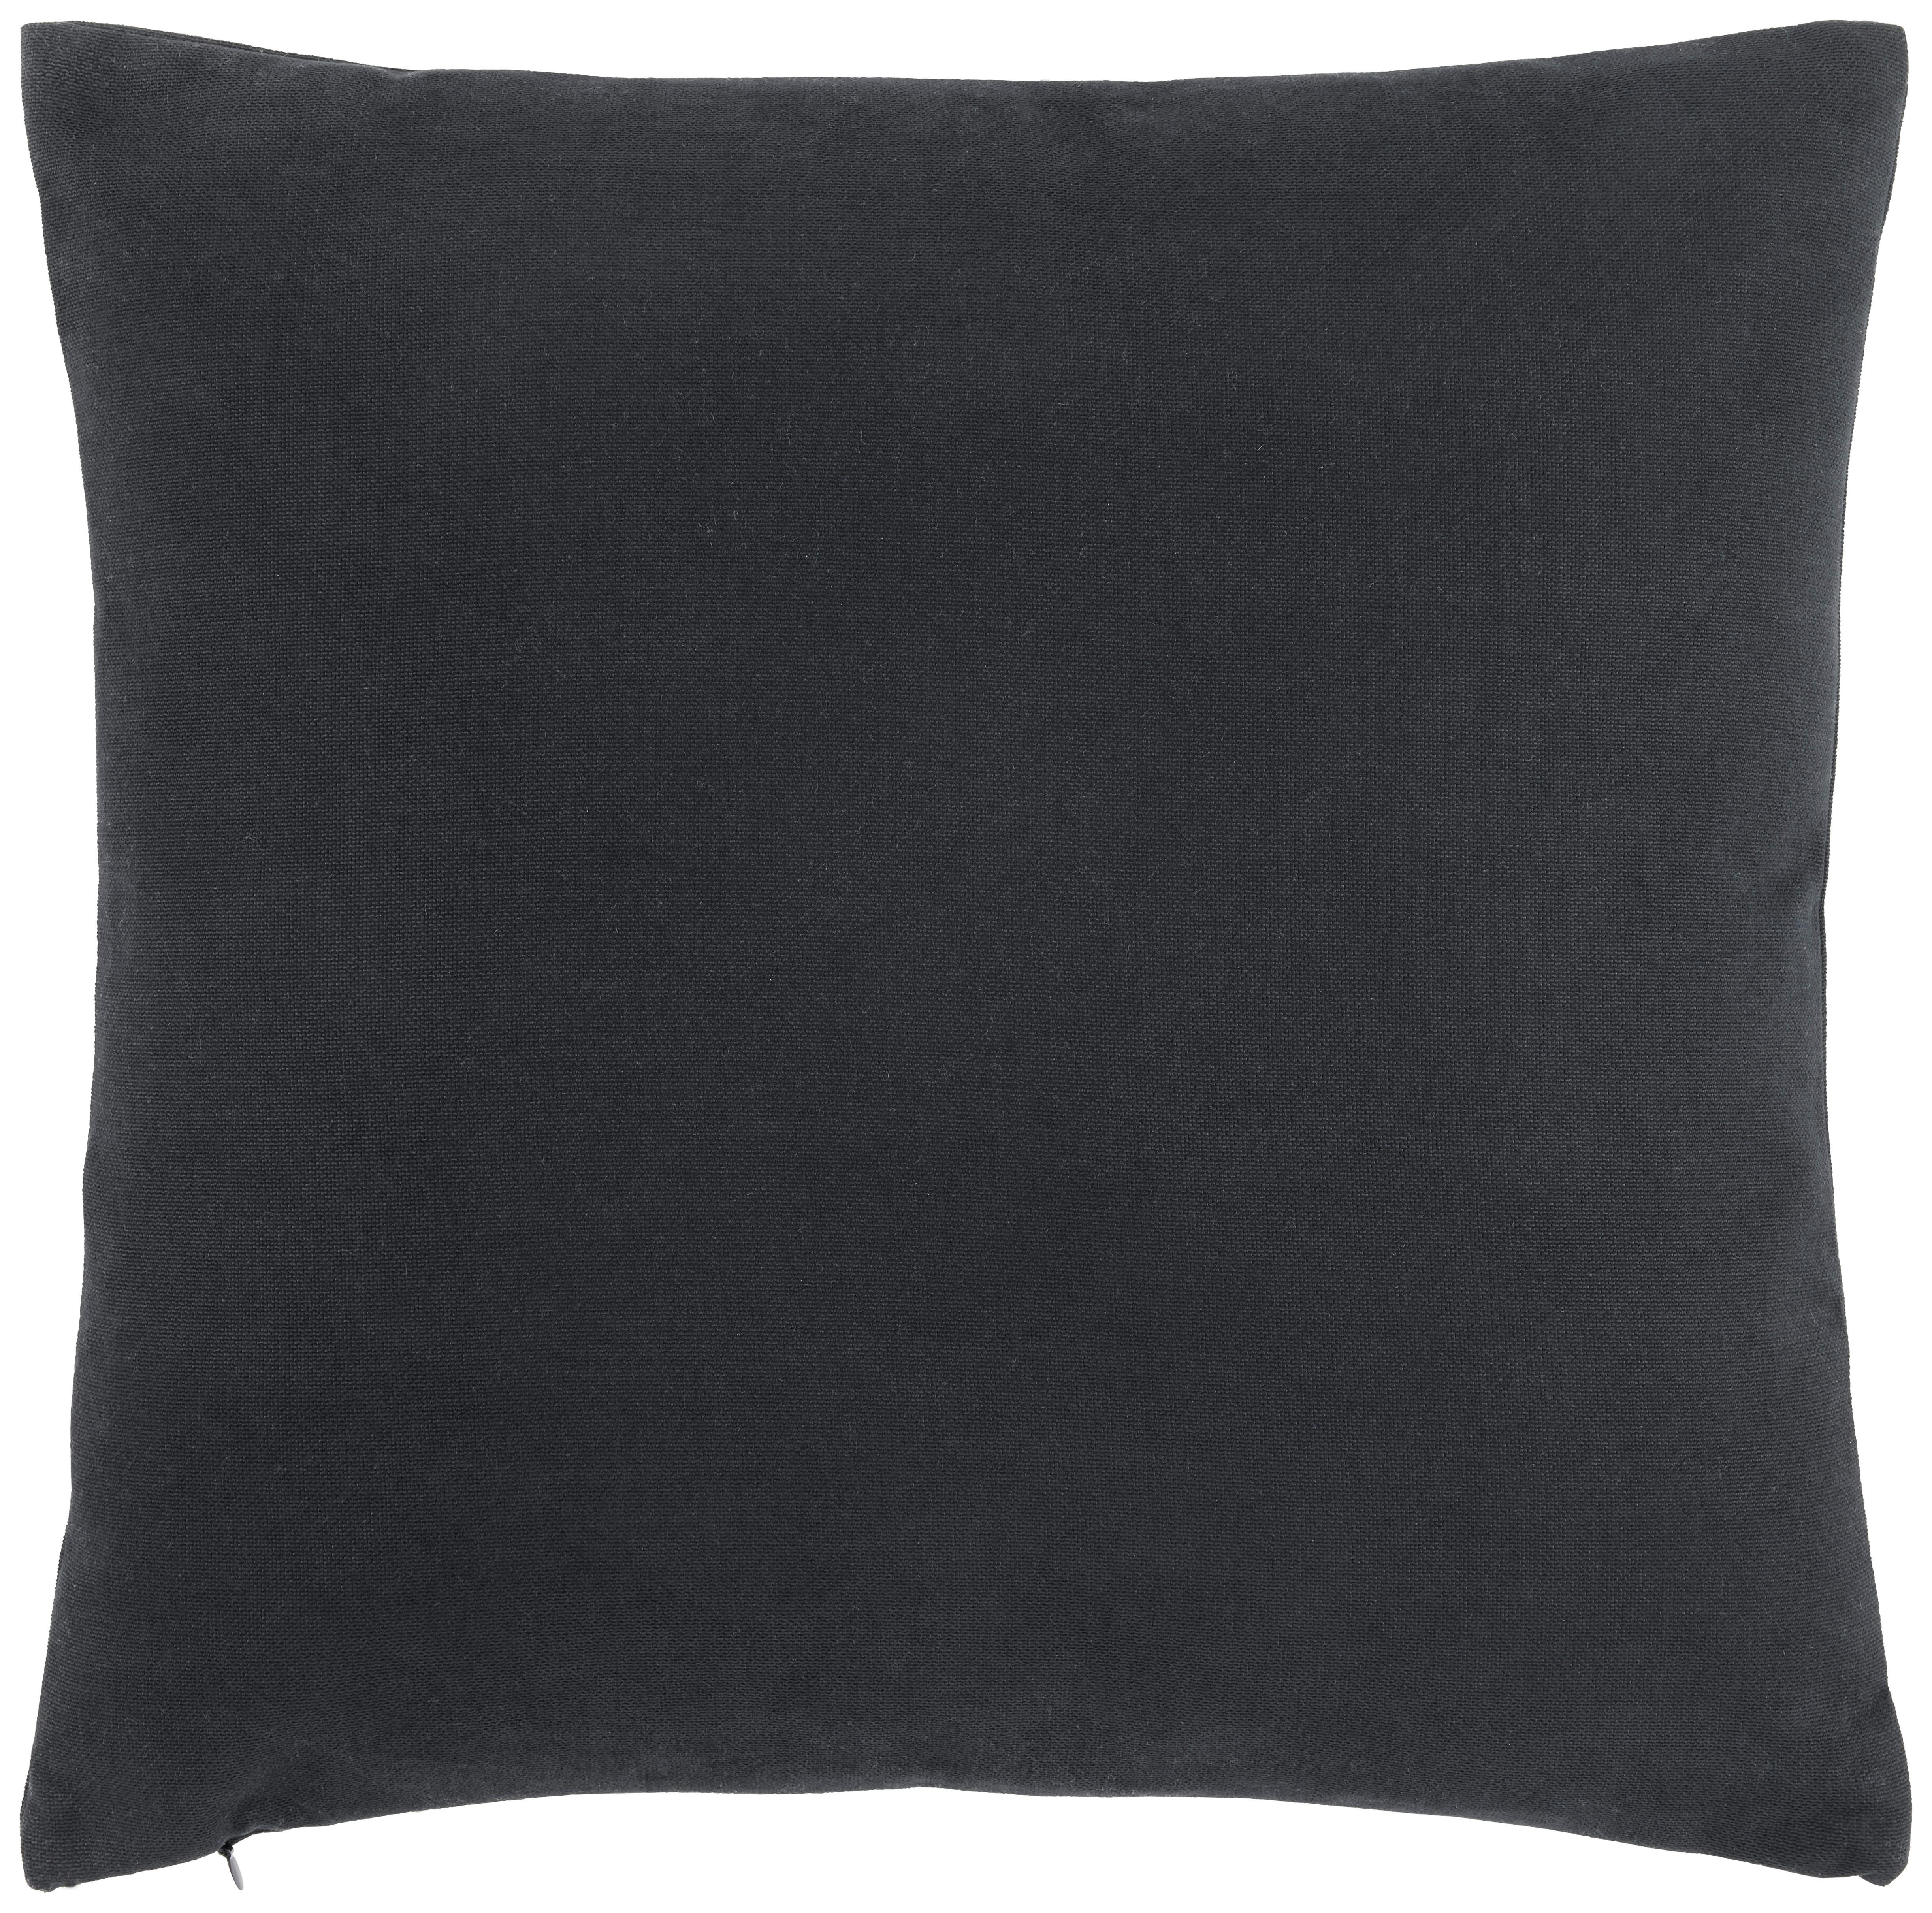 Dekoračný vankúš Lexi, 45/45cm, čierna - čierna, Moderný, textil (45/45cm) - Modern Living